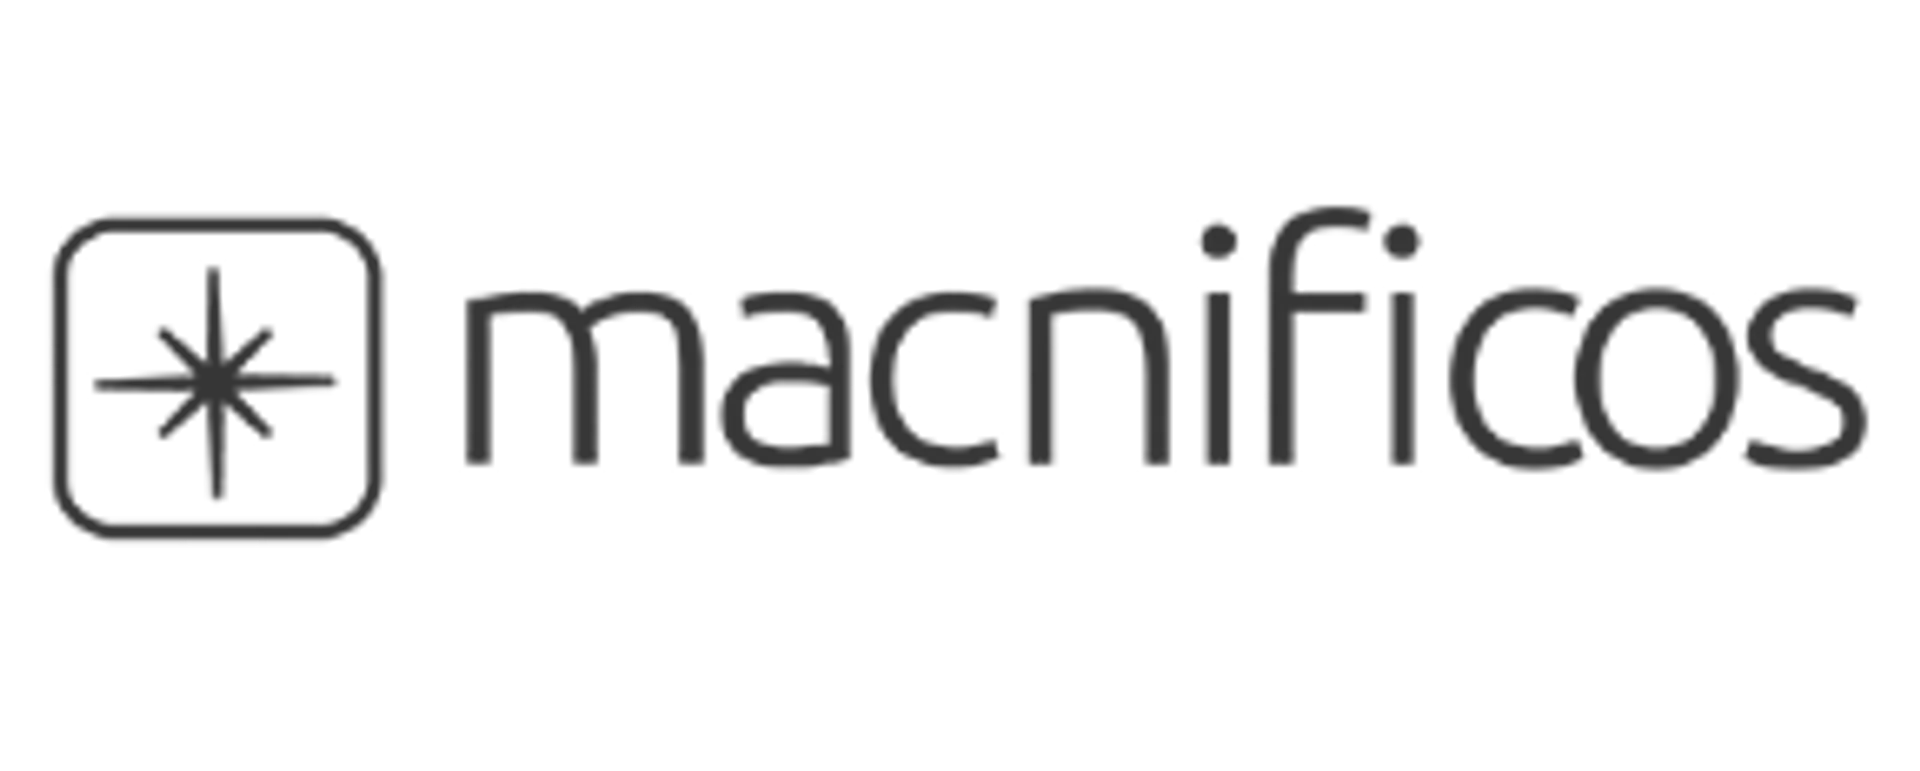 MACNIFICOS logo de catálogo